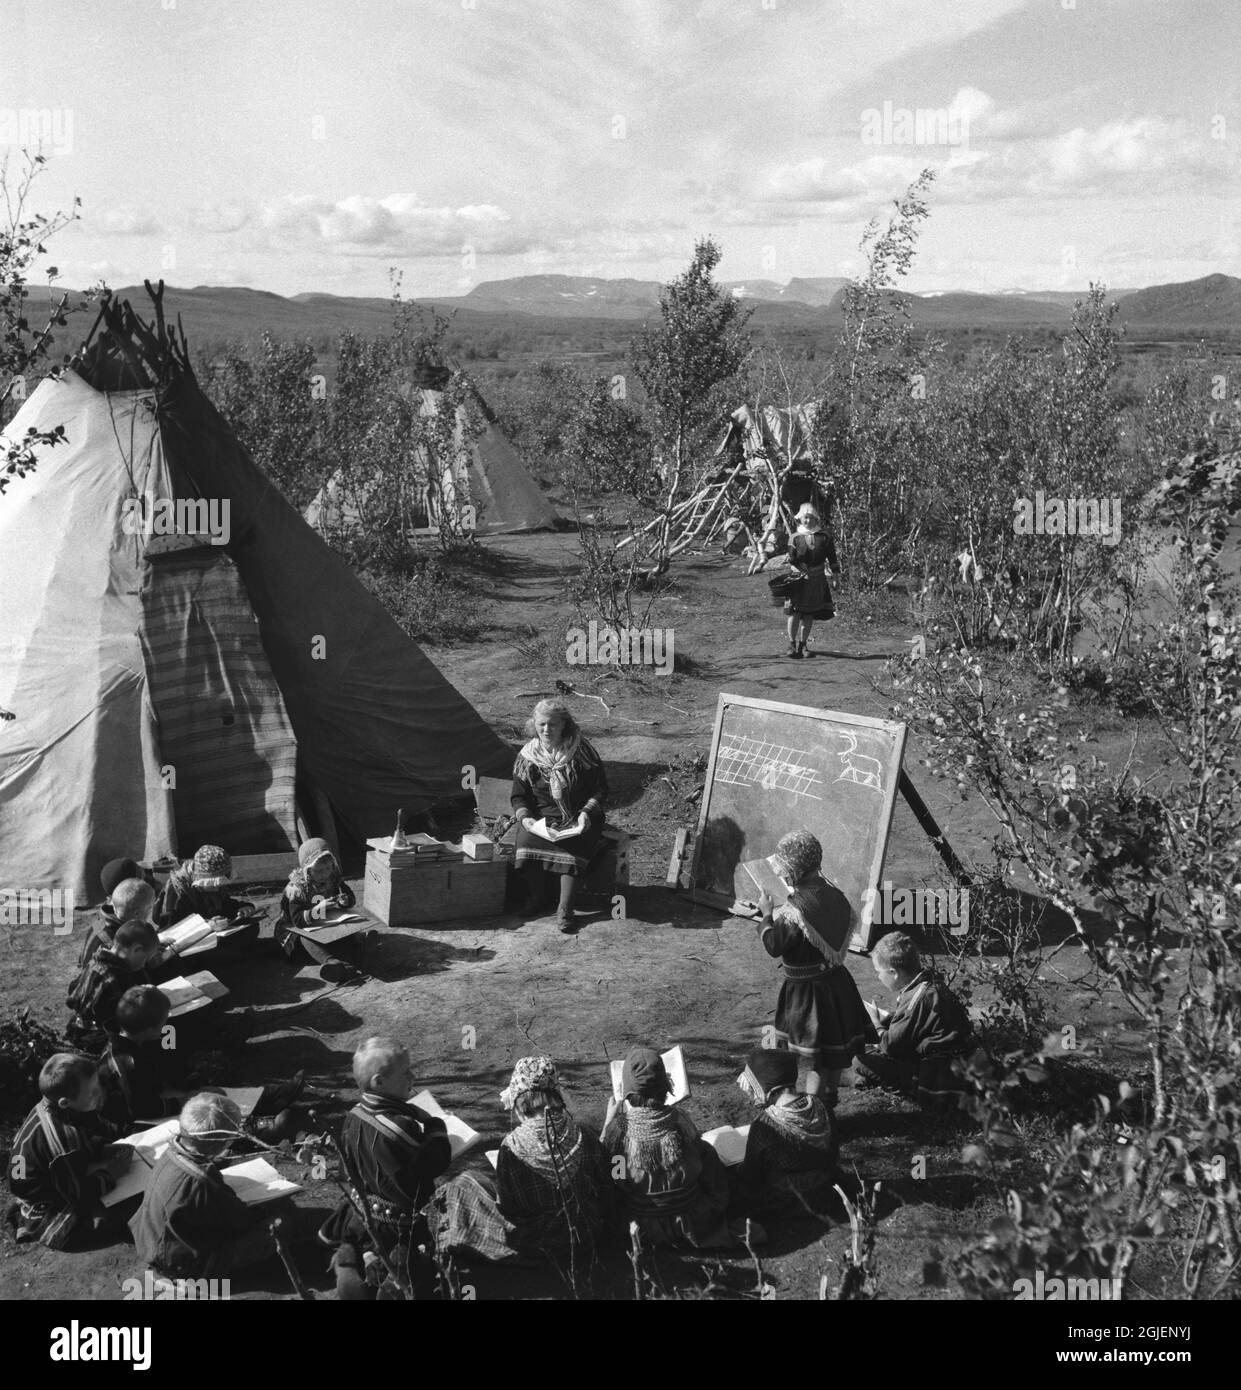 L'ultima scuola svedese tenuta in un tradizionale rifugio sami, il kata, si trovava a Keinovuopio, nel mezzo della natura selvaggia, a circa 150 km da Karesuando. Foto Stock